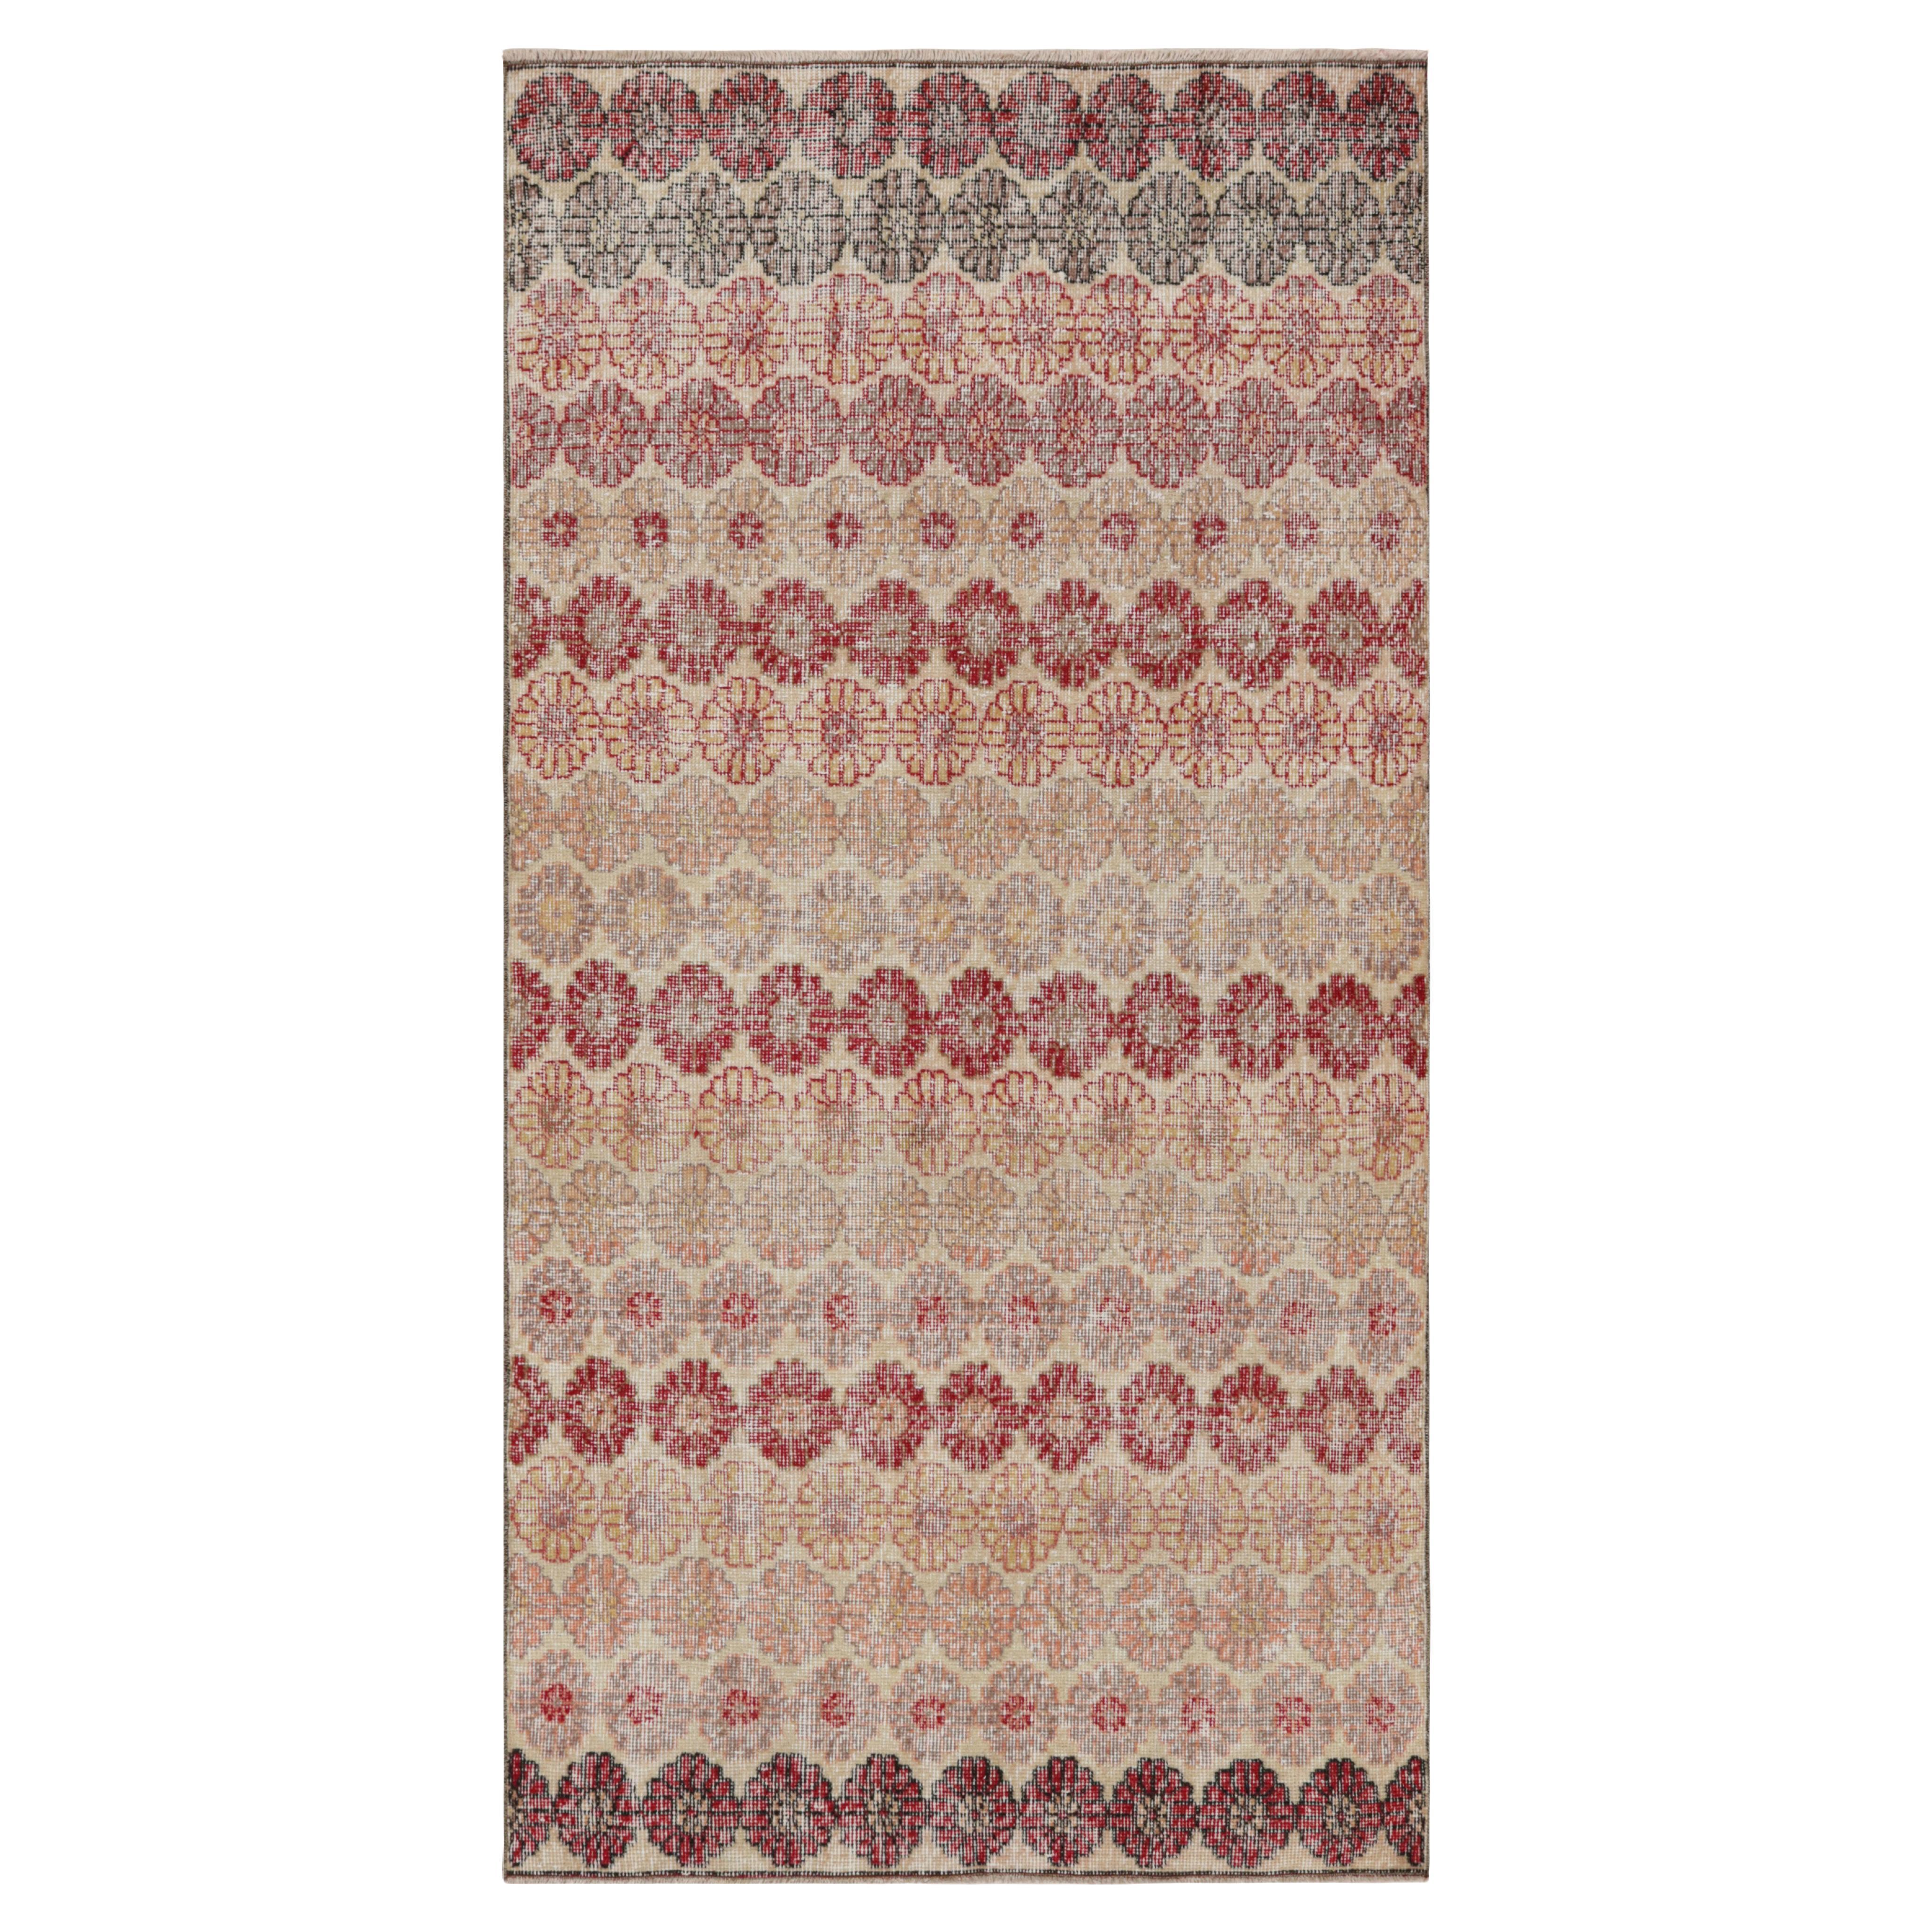 Vintage Zeki Müren Runner Rug with Polychrome Floral Pattern, from Rug & Kilim For Sale